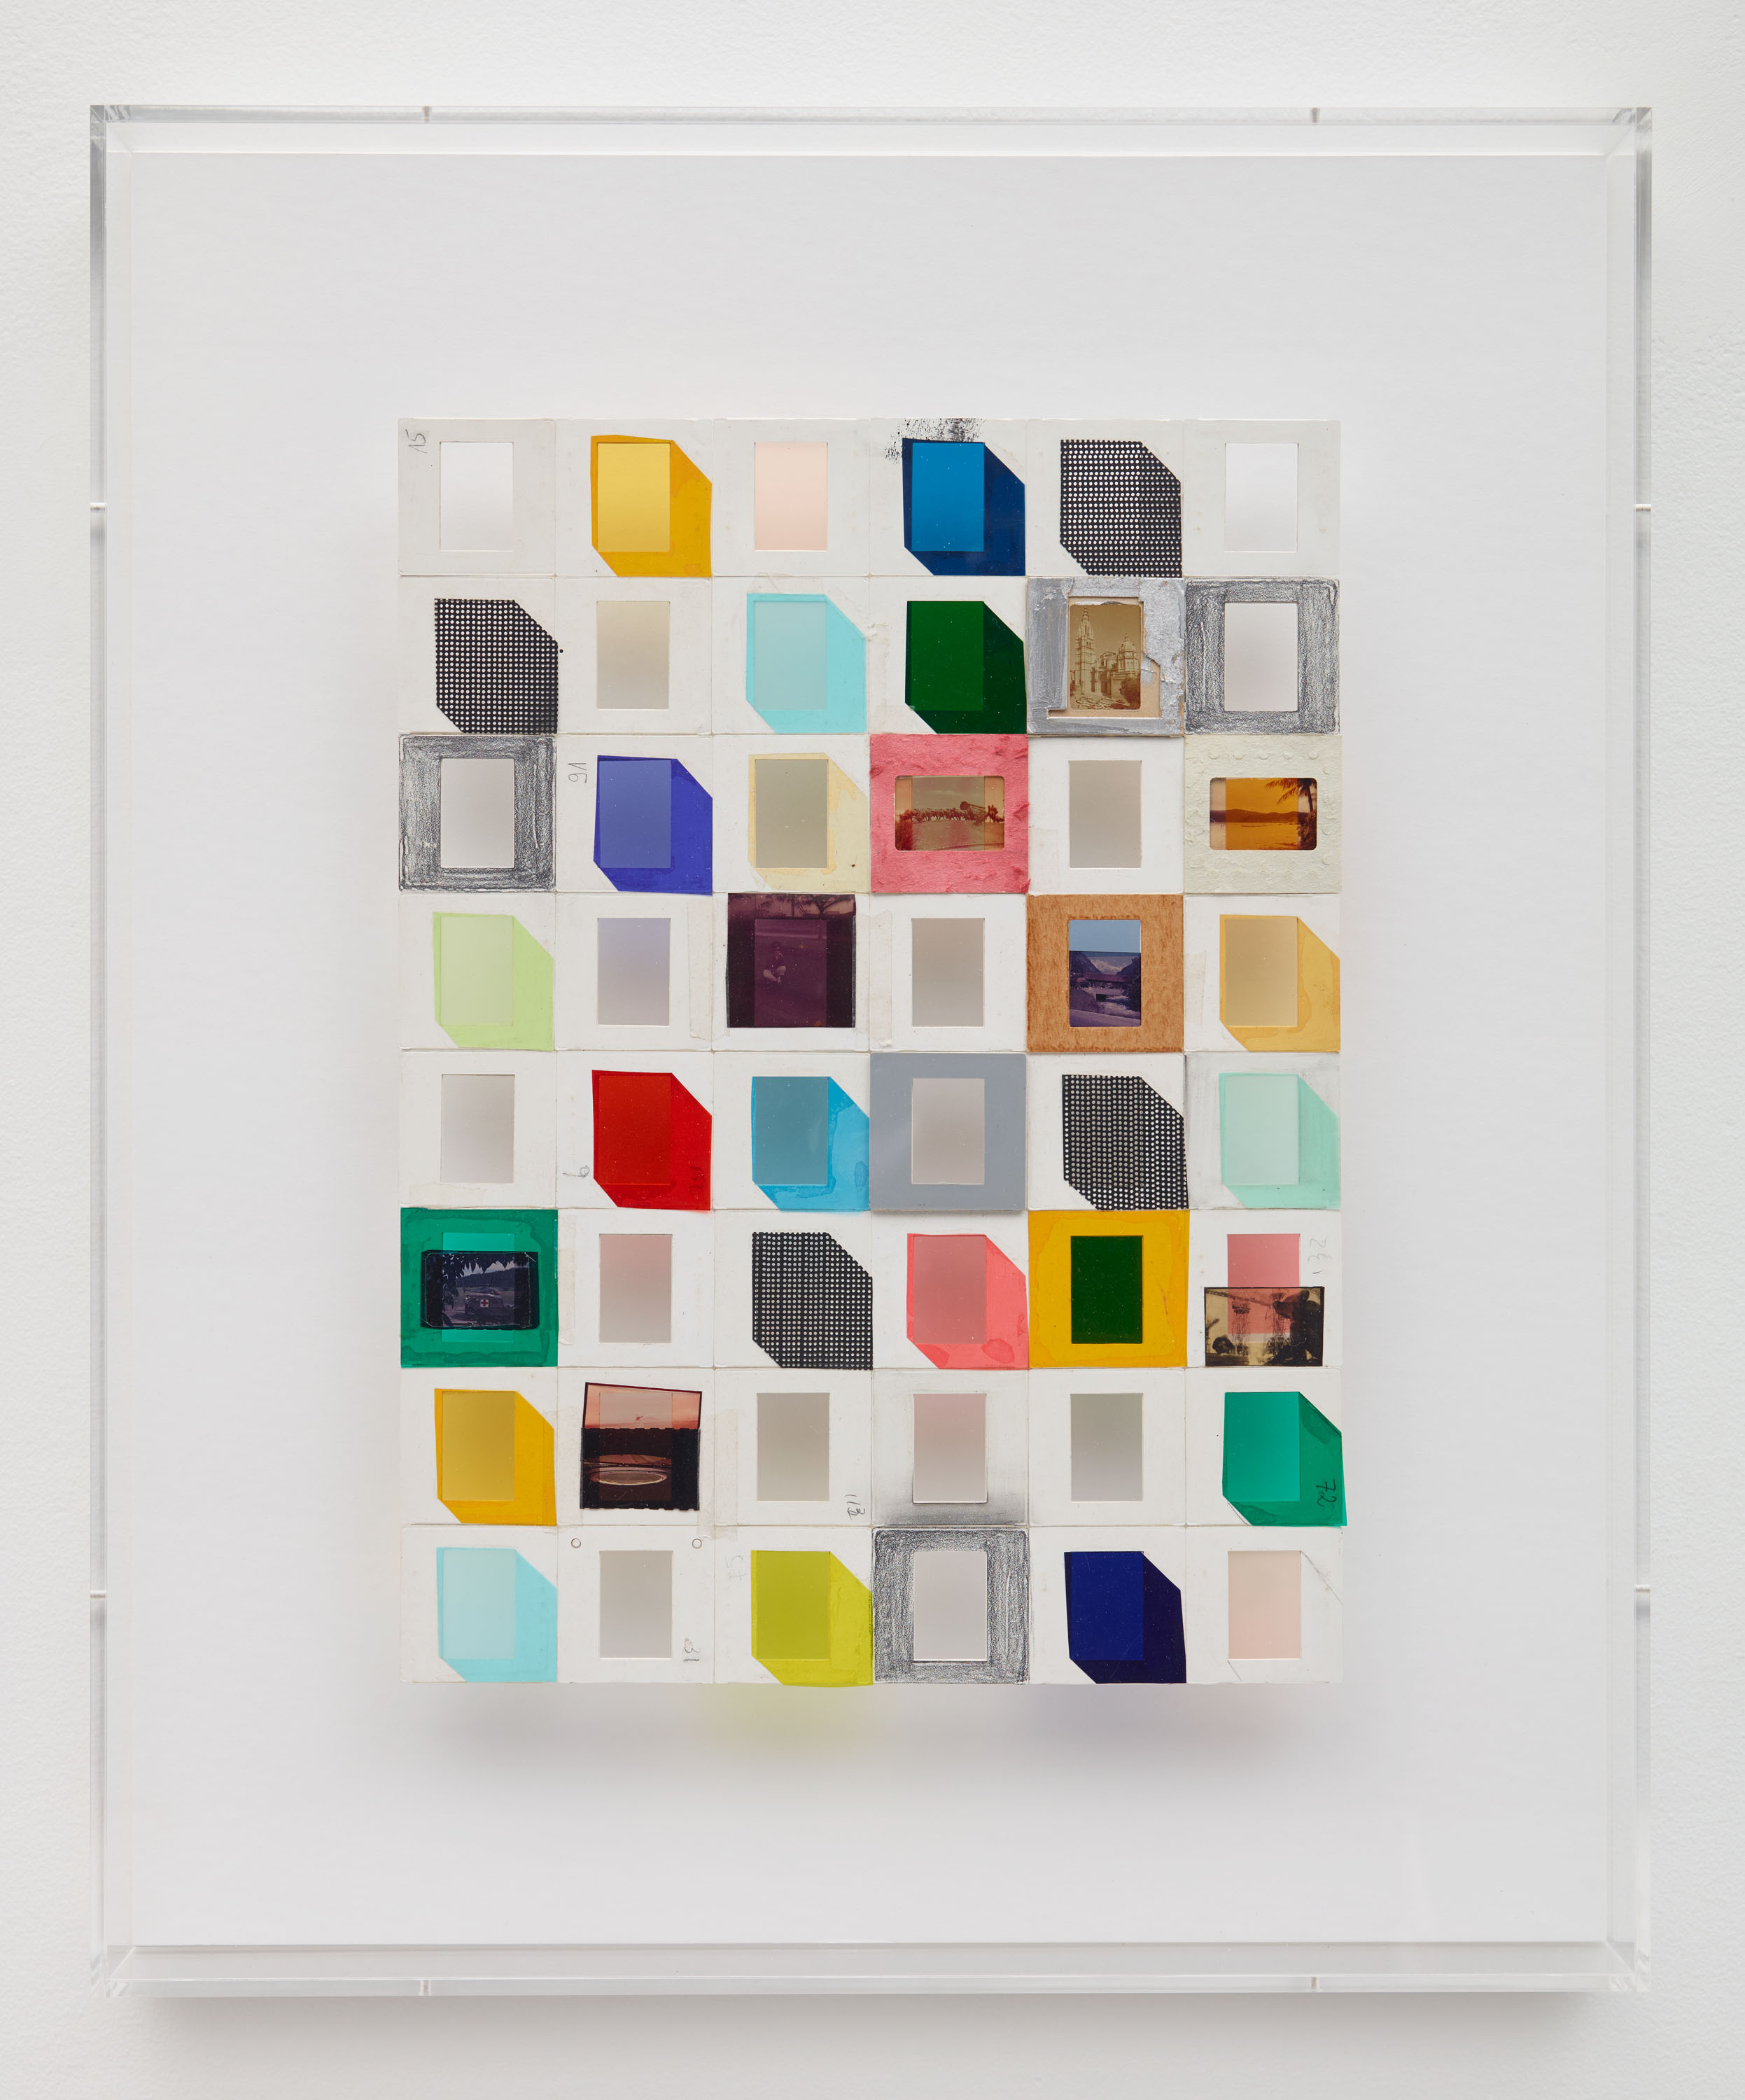 Cubos (Cubes), 2013